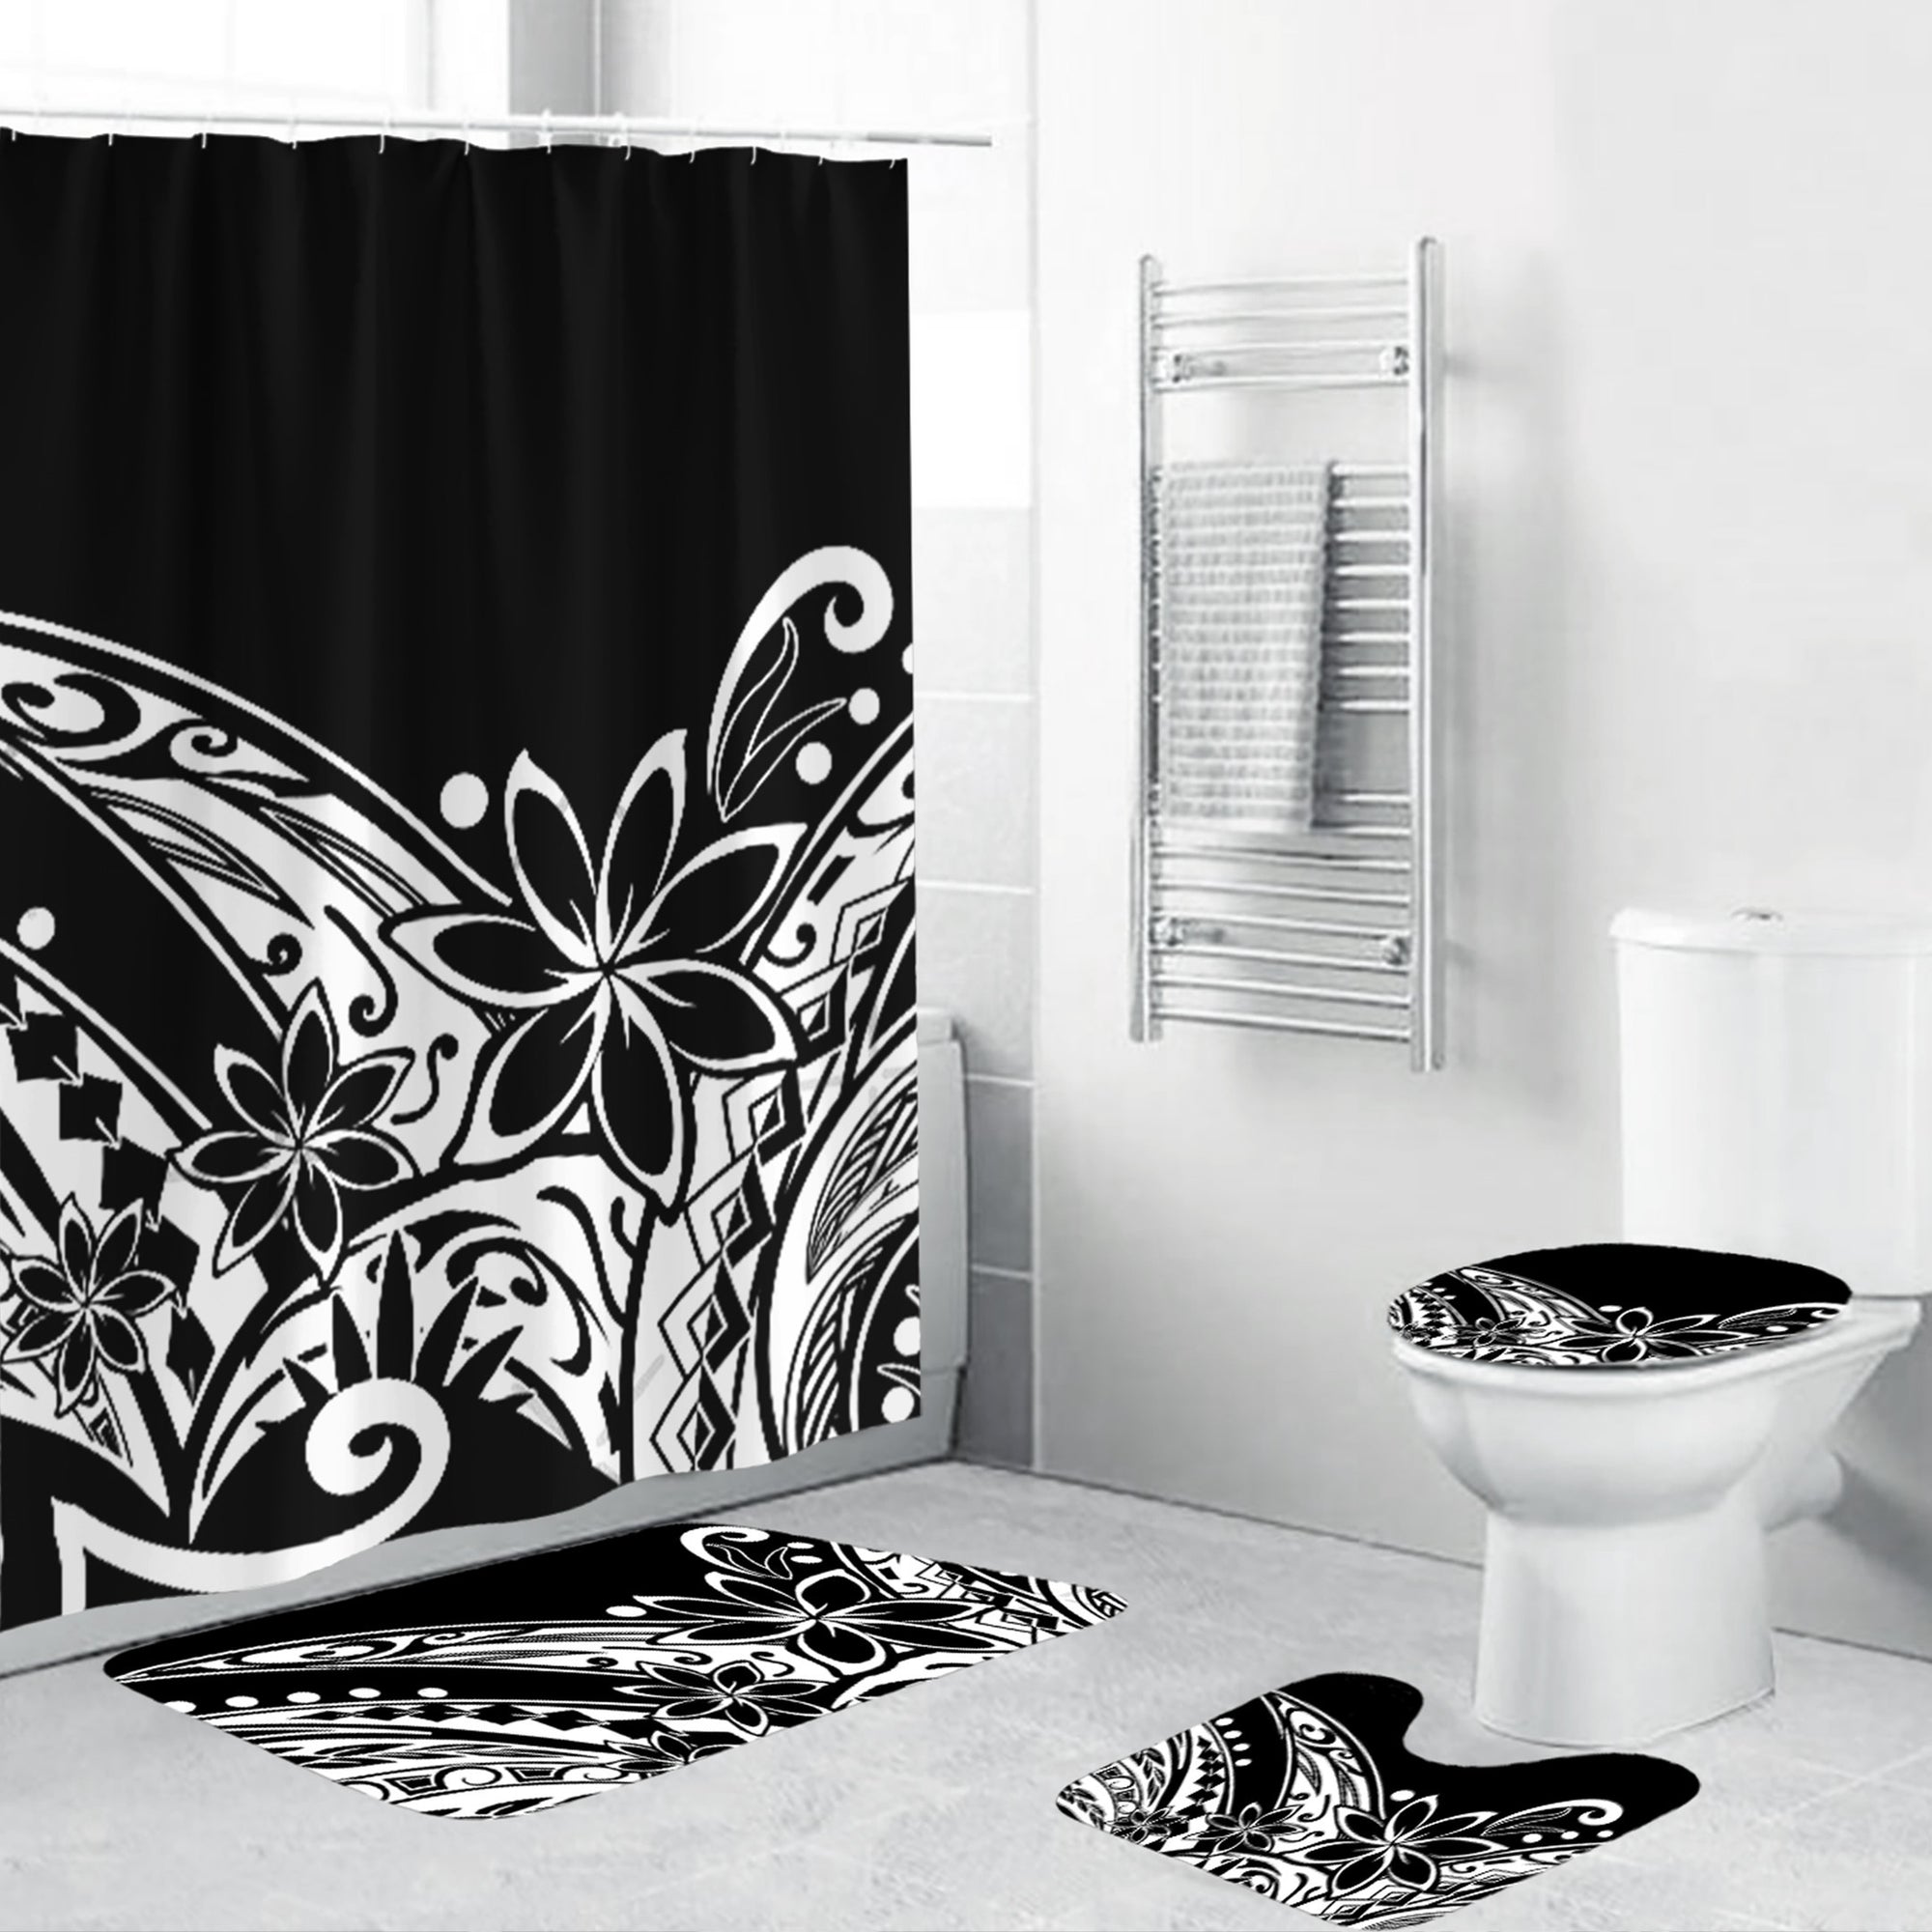 Polynesian Home Set - Polynesian Black And White Tribal Bathroom Set LT10 Black - Polynesian Pride